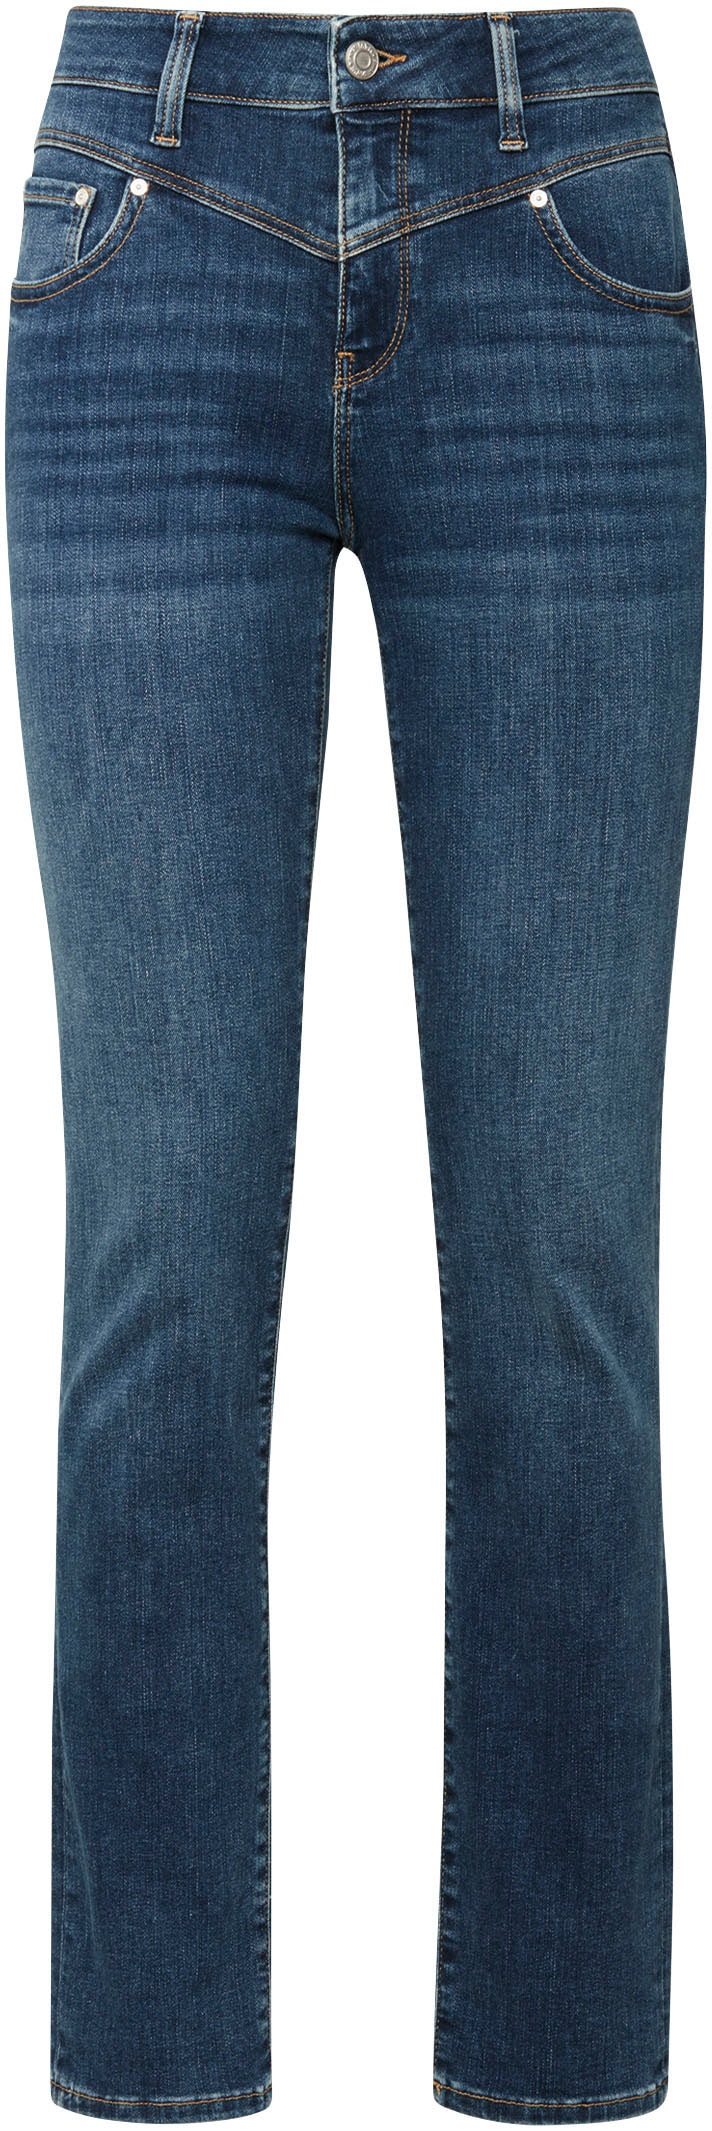 Mavi Slim-fit-Jeans, trageangenehmer Stretchdenim dank hochwertiger Verarbe günstig online kaufen